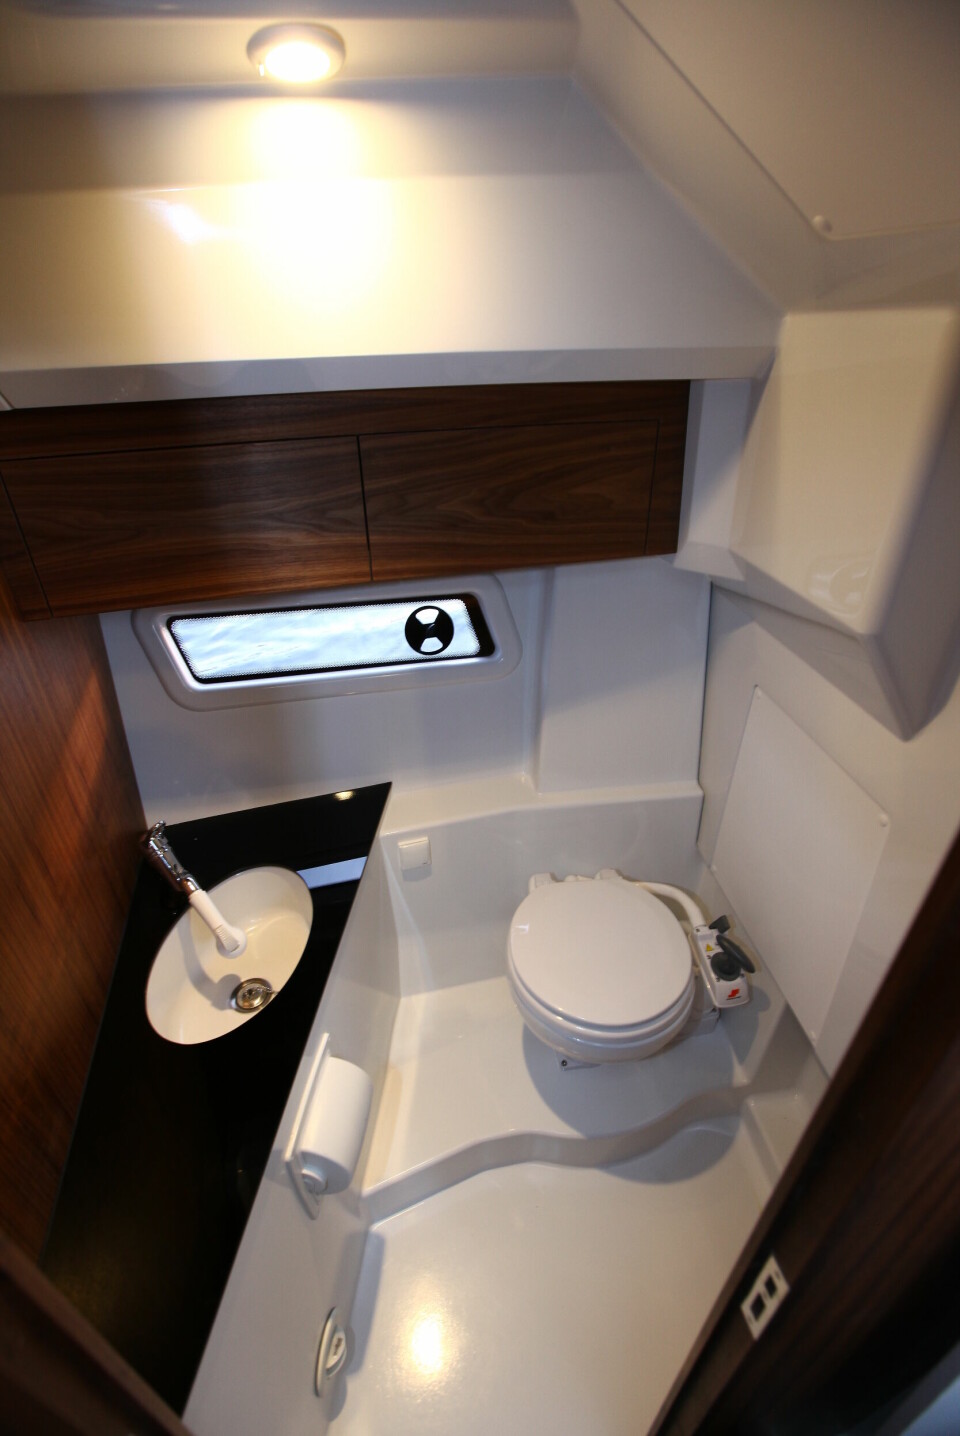 KOMPLETT toalettrom med dusjmulighet er et pluss, men ventilasjonen bør bli bedre.